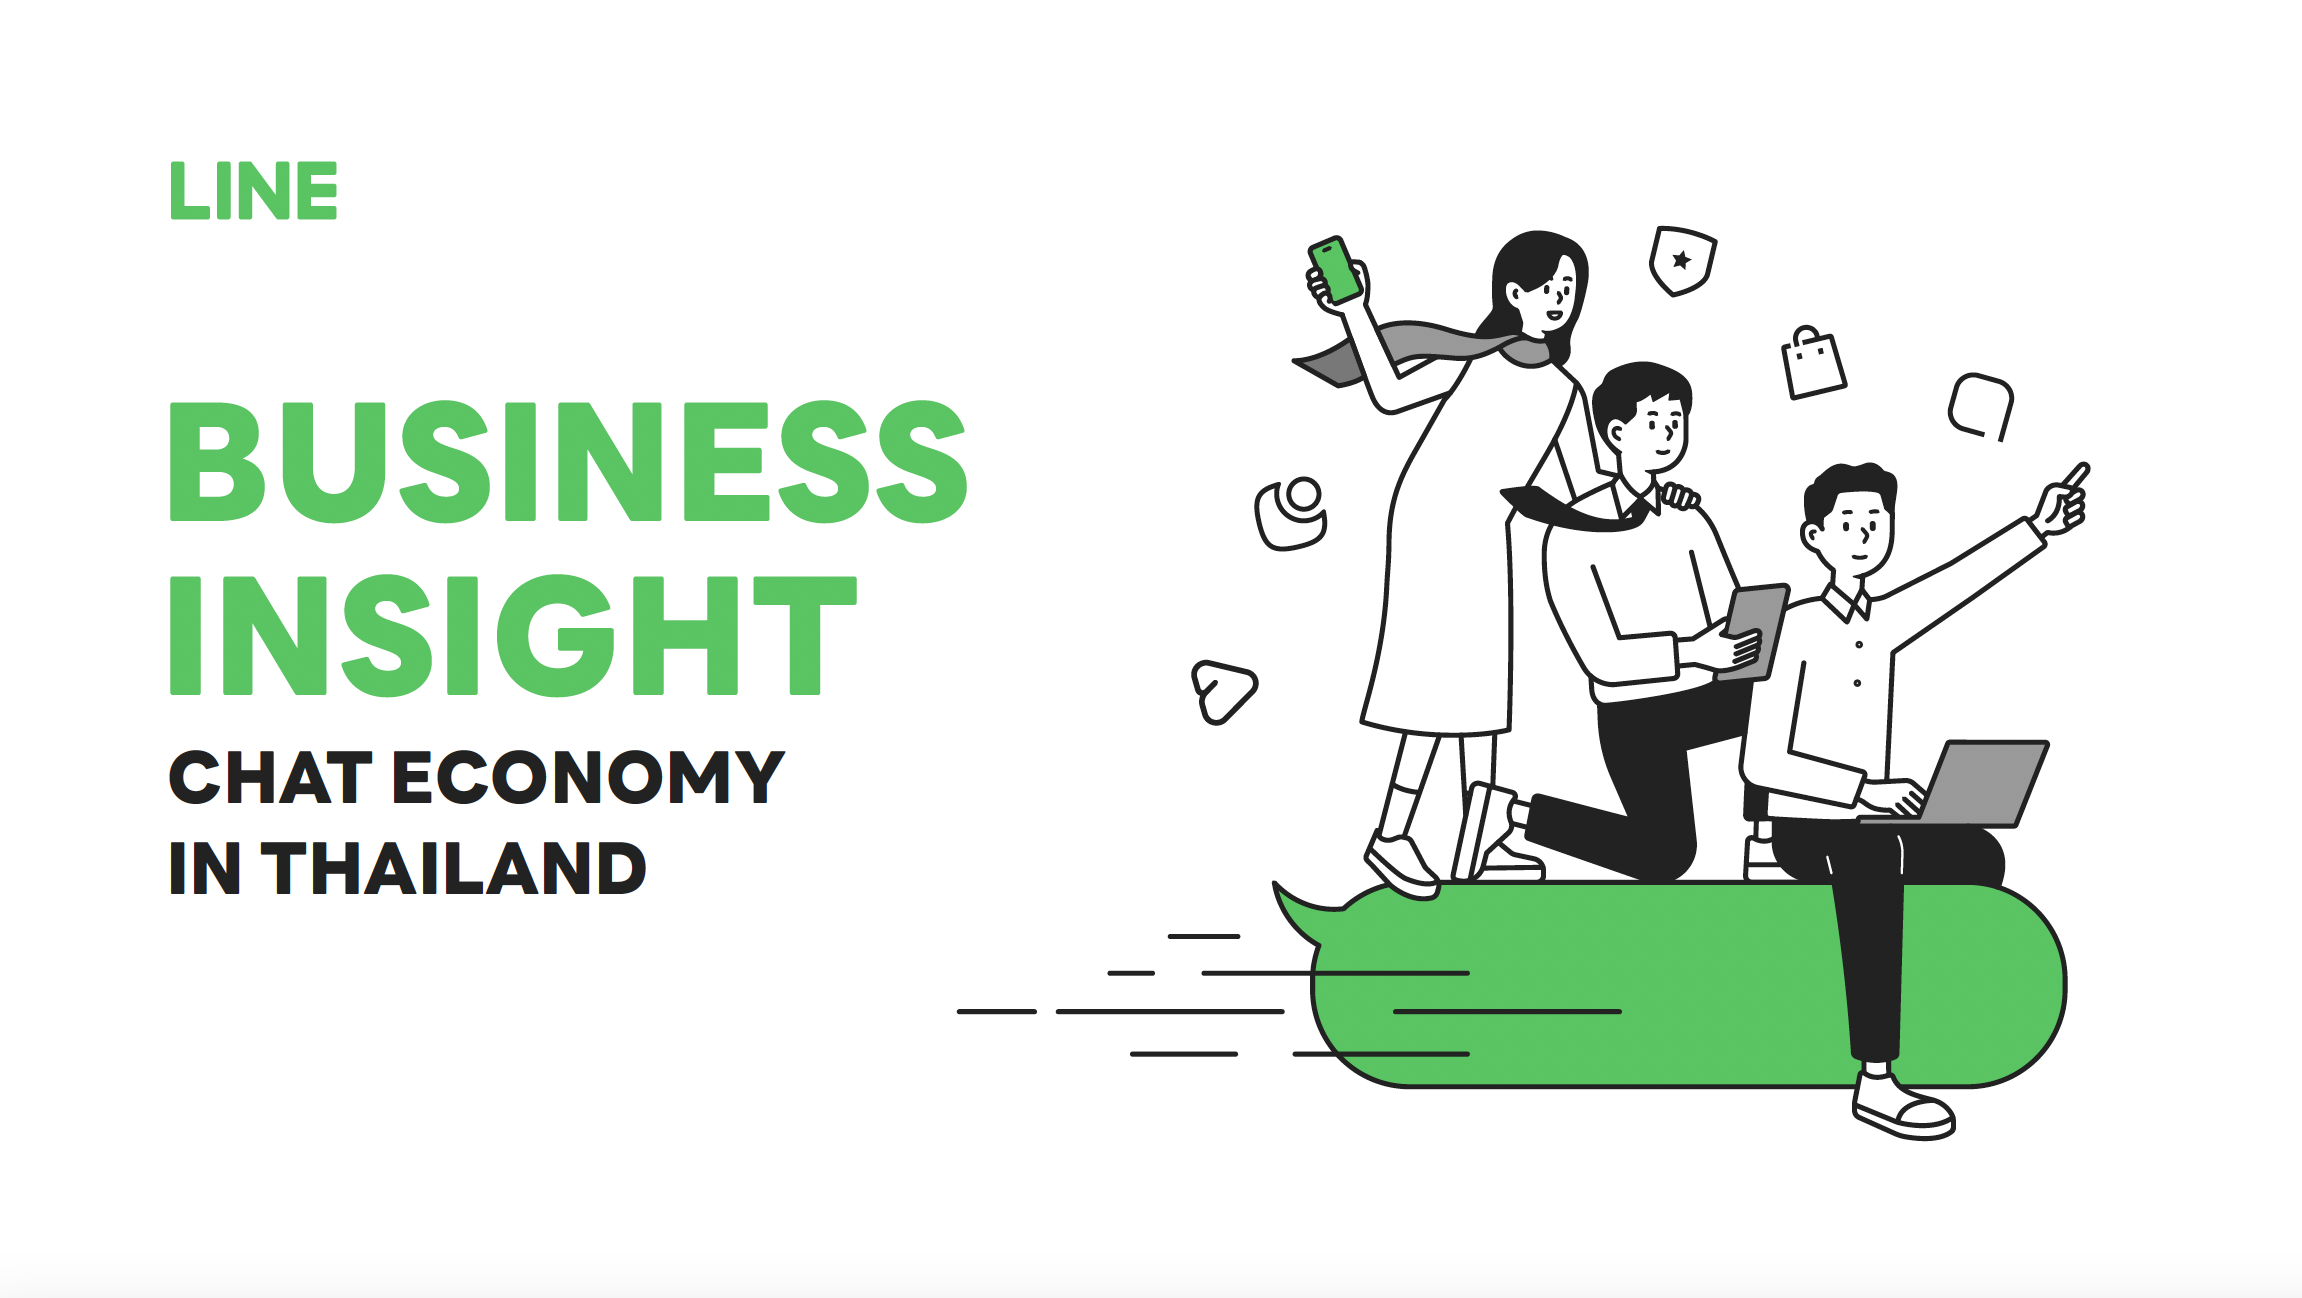 LINE ชูแนวคิด Chat Economy เปลี่ยนวิกฤตเป็นโอกาส เปิดแผนธุรกิจหลัก มุ่งผลักดันเศรษฐกิจและชีวิตคนไทย เติบโตต่อได้อย่างยั่งยืน